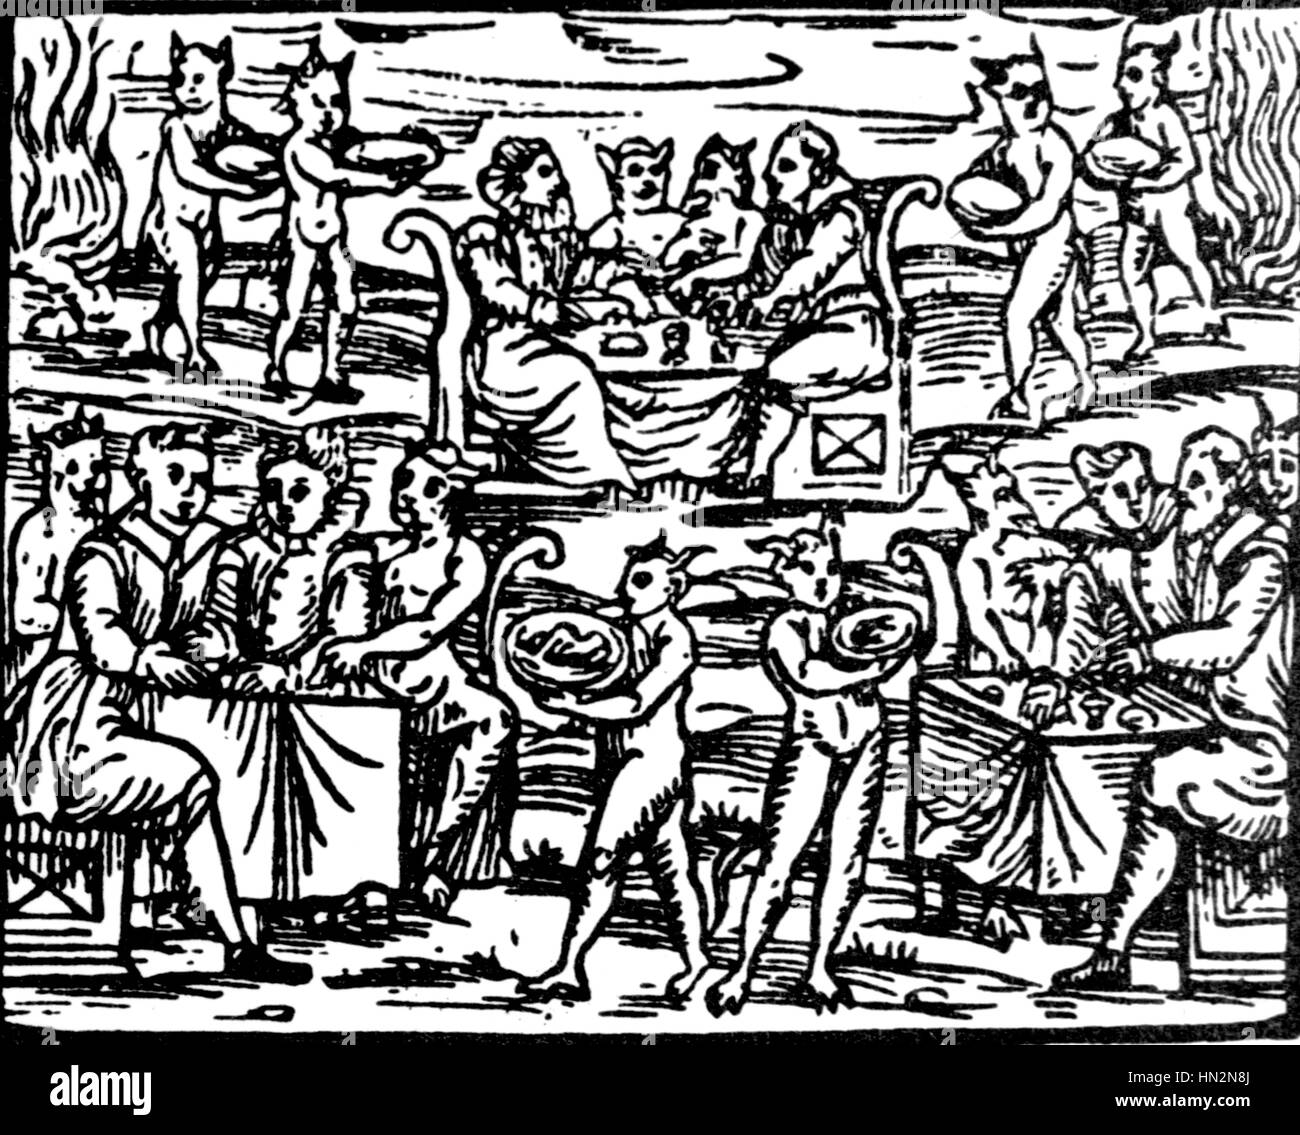 Les sorcières allant au sabbat des sorcières du 16e siècle gravure sur bois en France Banque D'Images